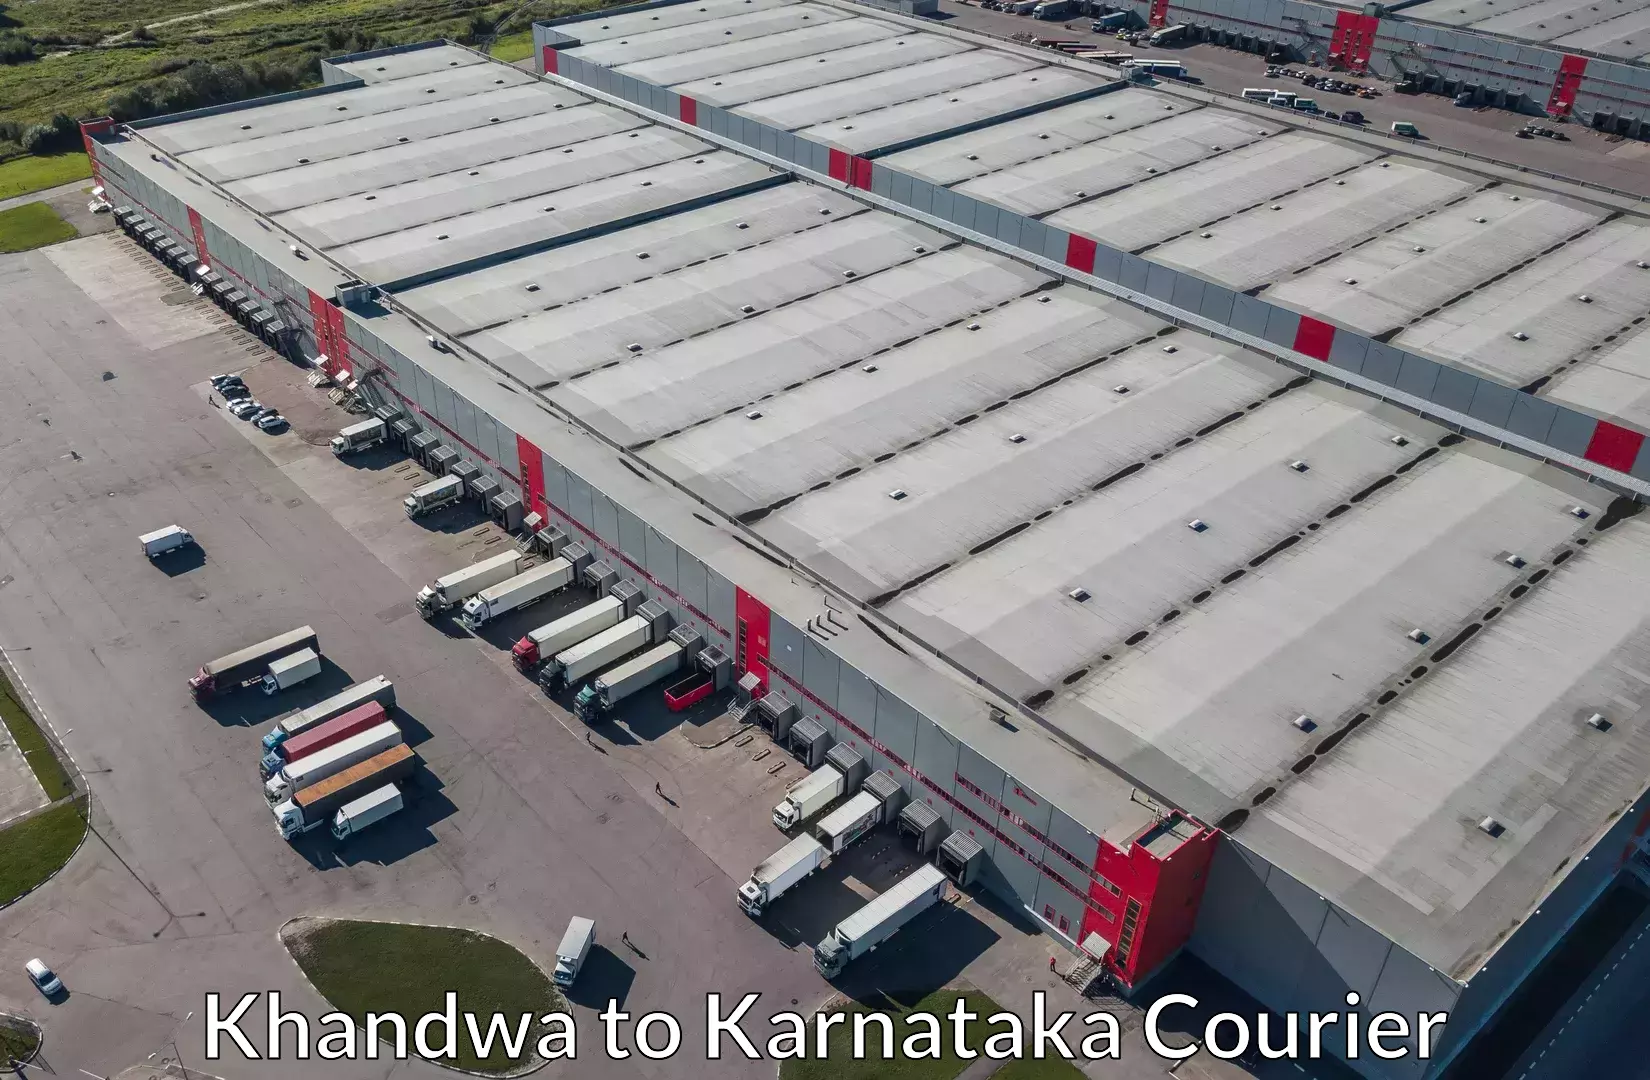 Luggage transfer service Khandwa to Karnataka